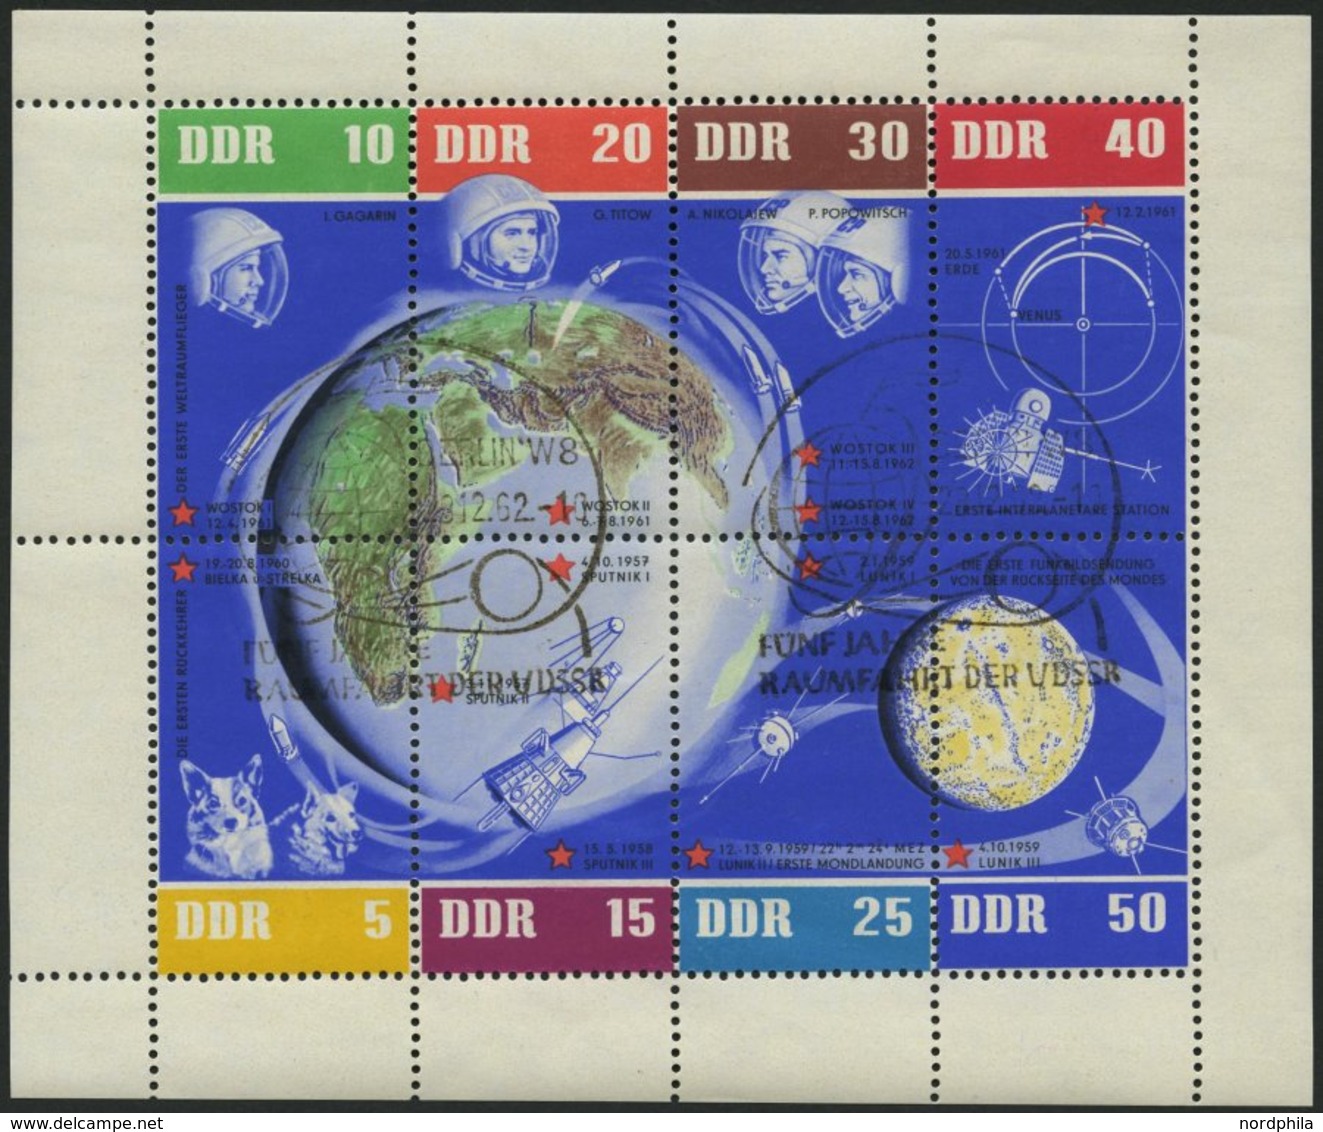 DDR 926-33KB O, 1962, 5 Jahre Sowjetische Weltraumflüge Im Kleinbogen, Rechter Rand Nicht Durchgezähnt, Ersttagssonderst - Used Stamps